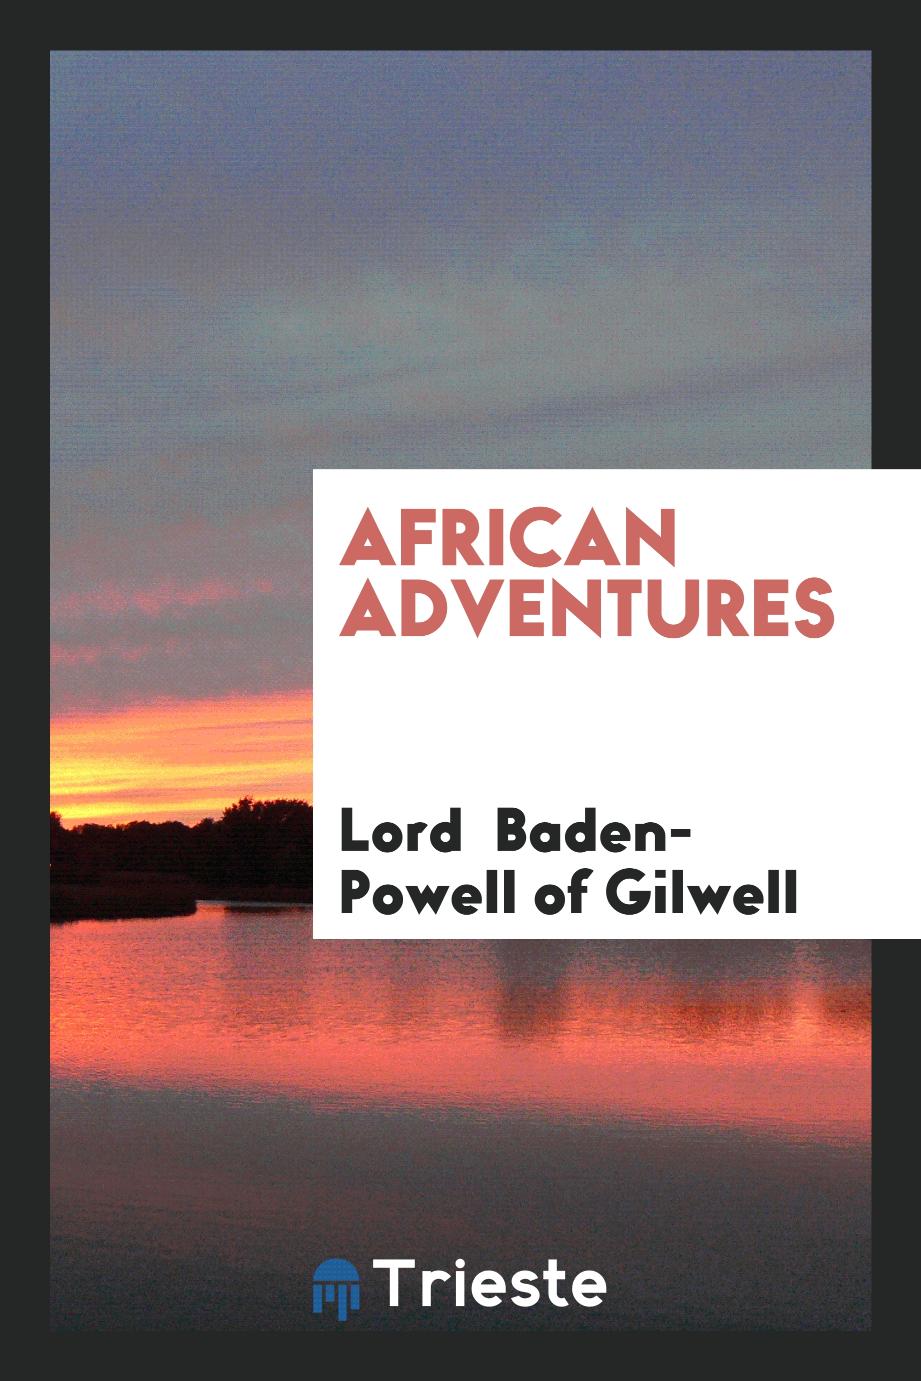 African adventures